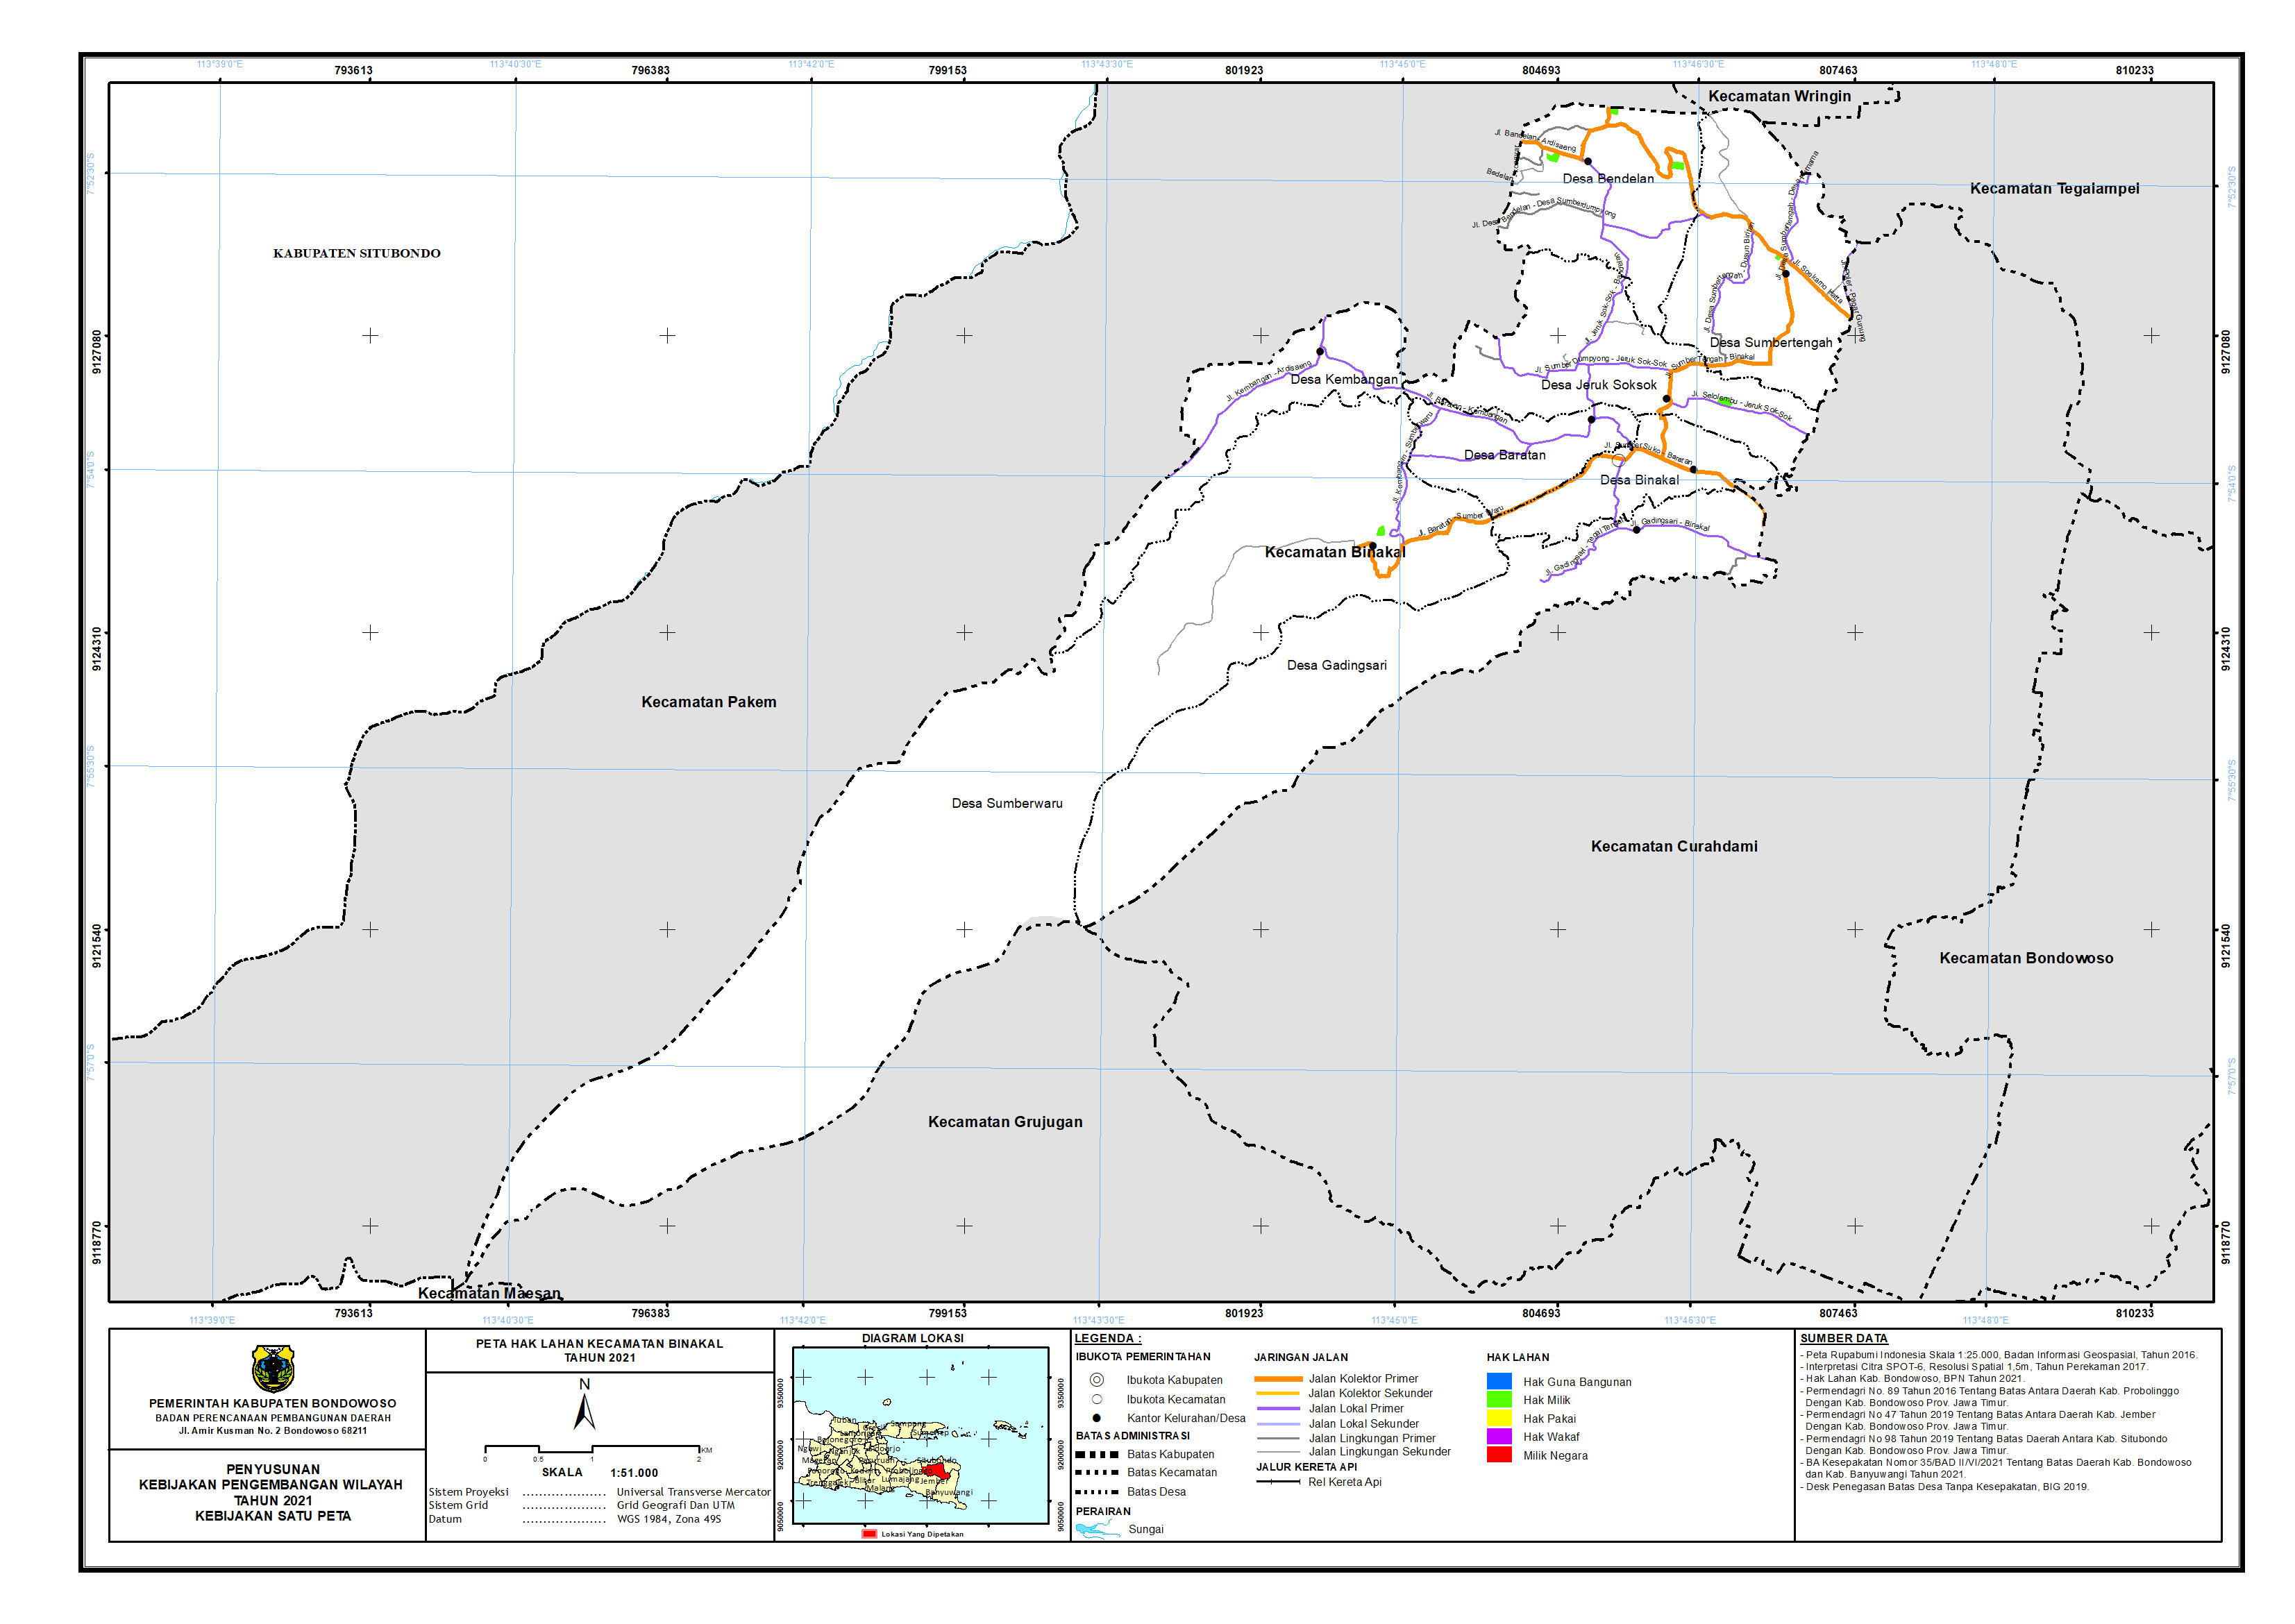 Peta Hak Lahan Kecamatan Binakal.png